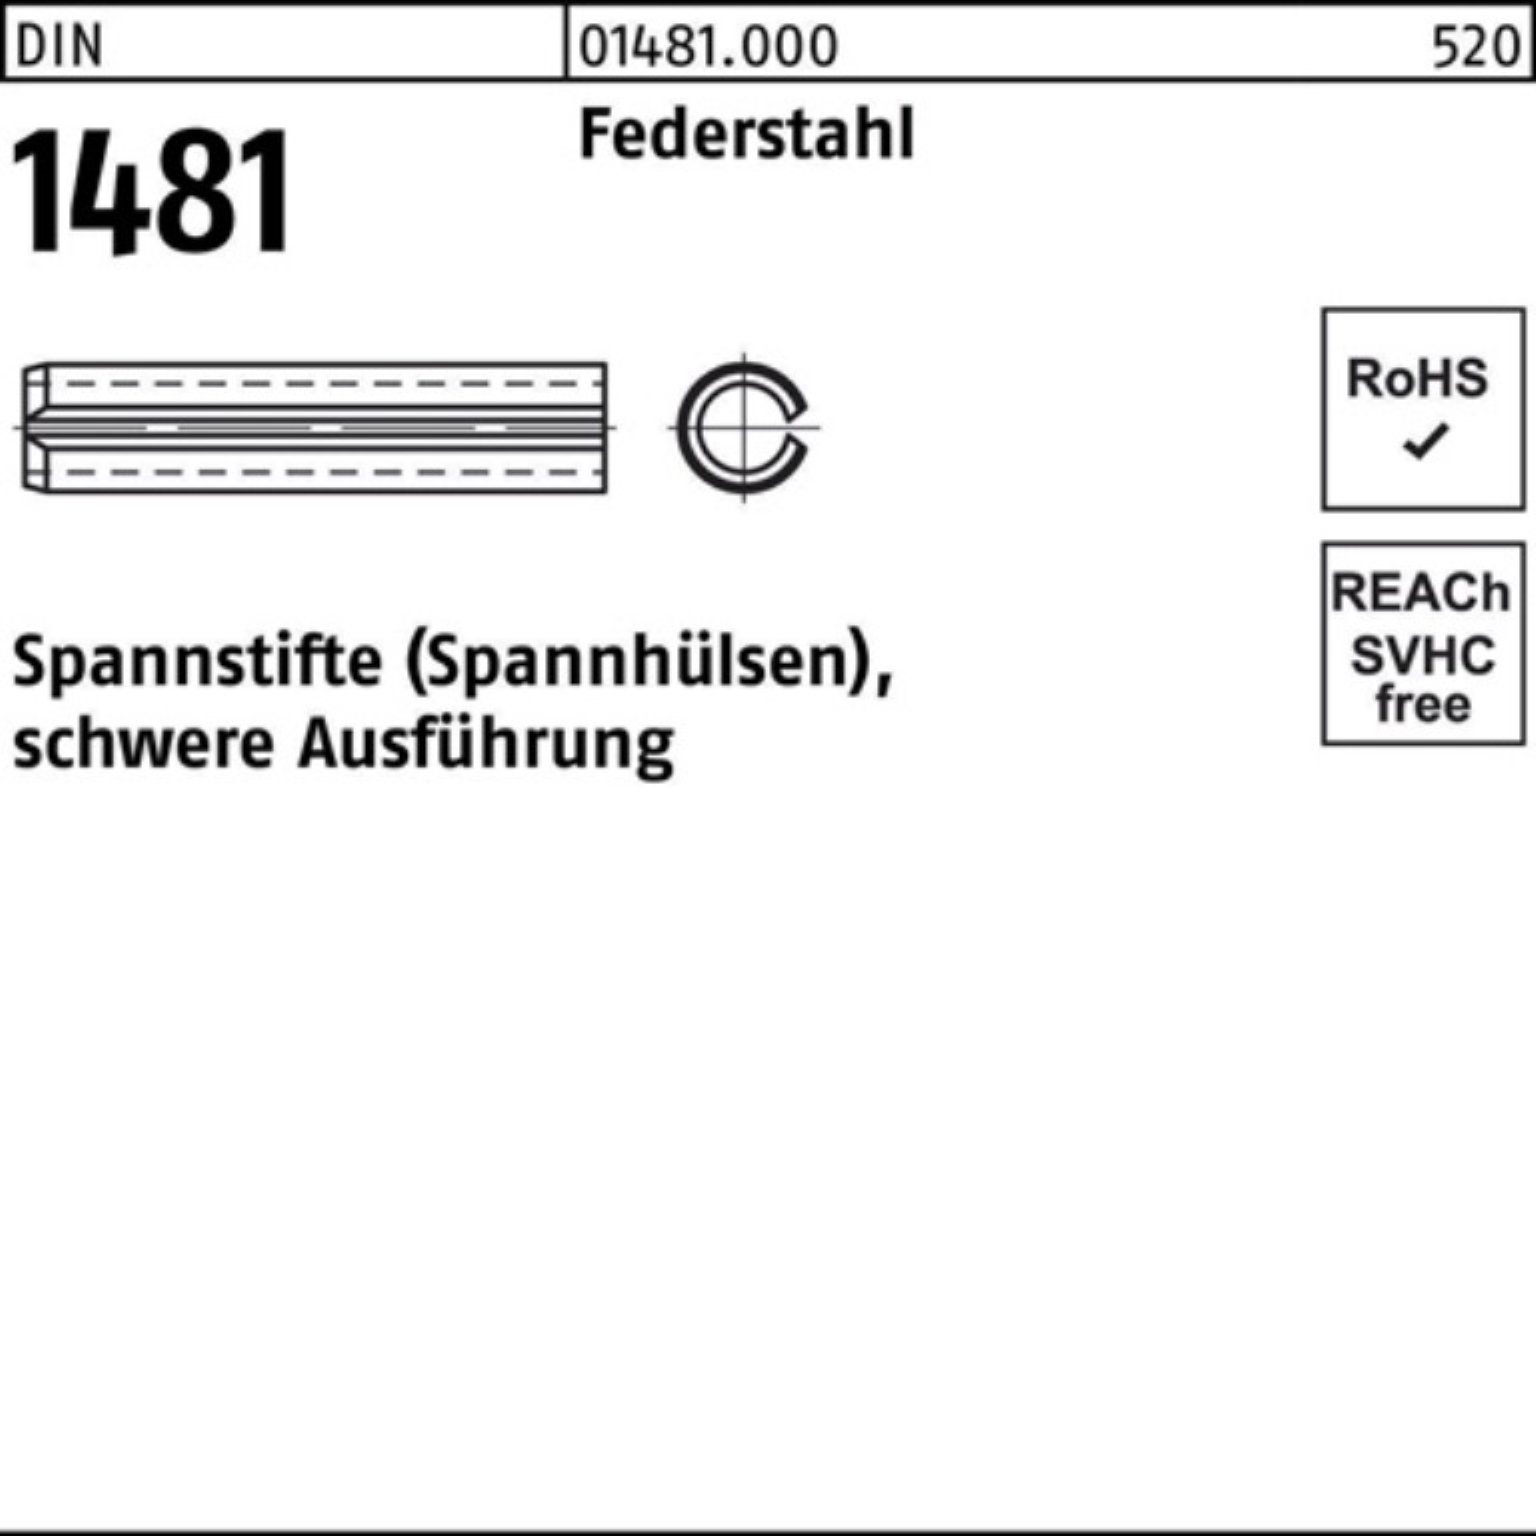 Ausführung DIN 8 Reyher Spannstift Spannstift 1481 200 4x Federstahl schwere 200er Pack